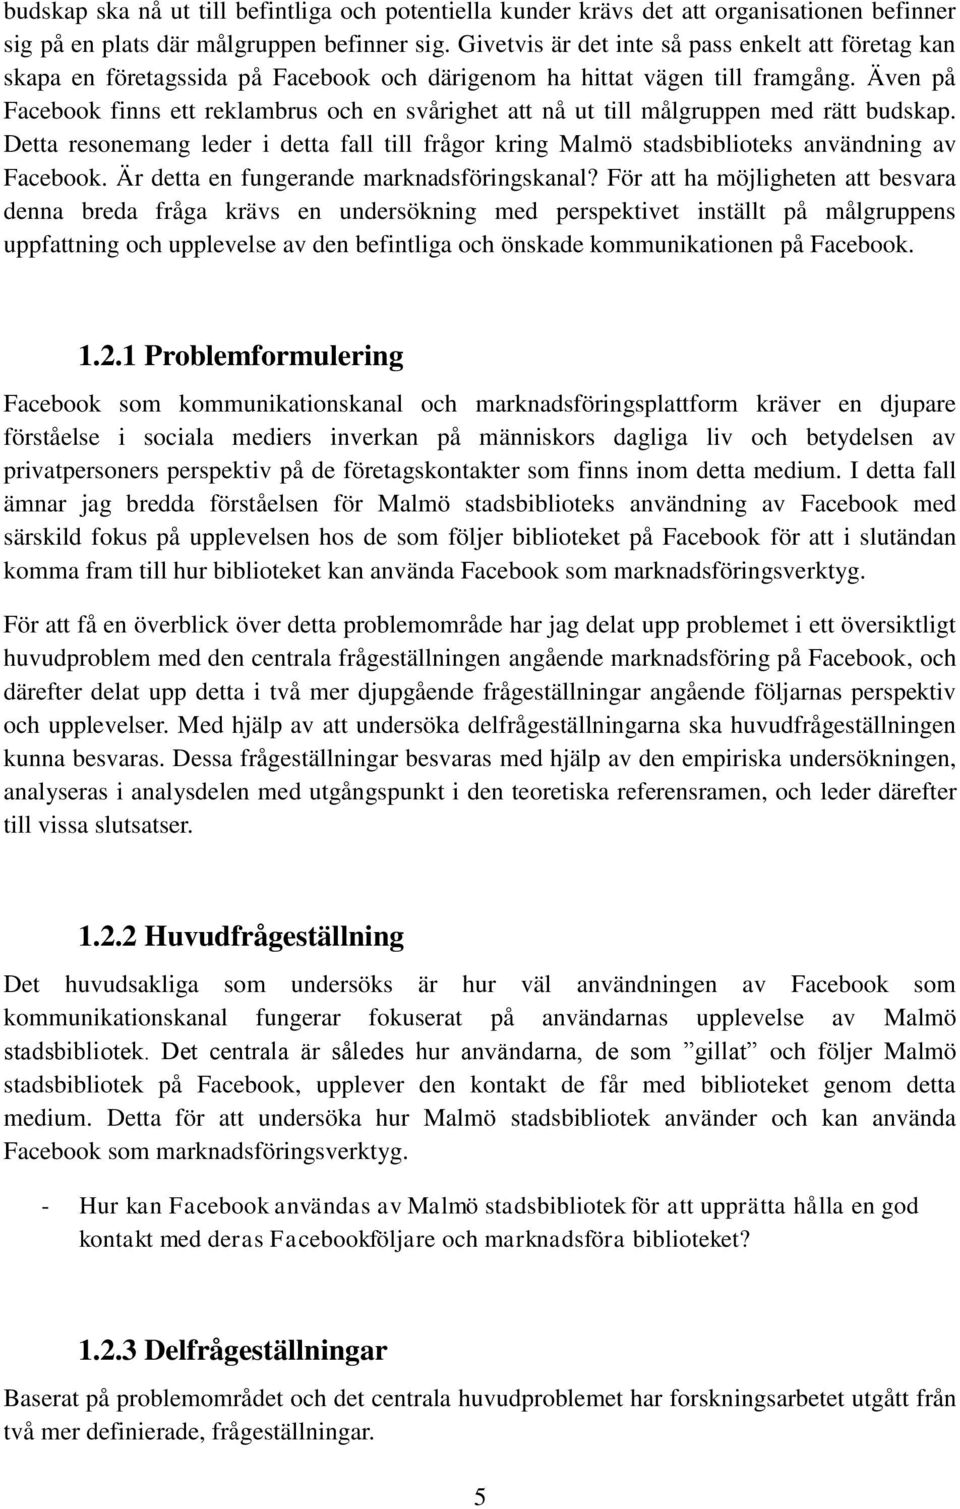 Även på Facebook finns ett reklambrus och en svårighet att nå ut till målgruppen med rätt budskap. Detta resonemang leder i detta fall till frågor kring Malmö stadsbiblioteks användning av Facebook.